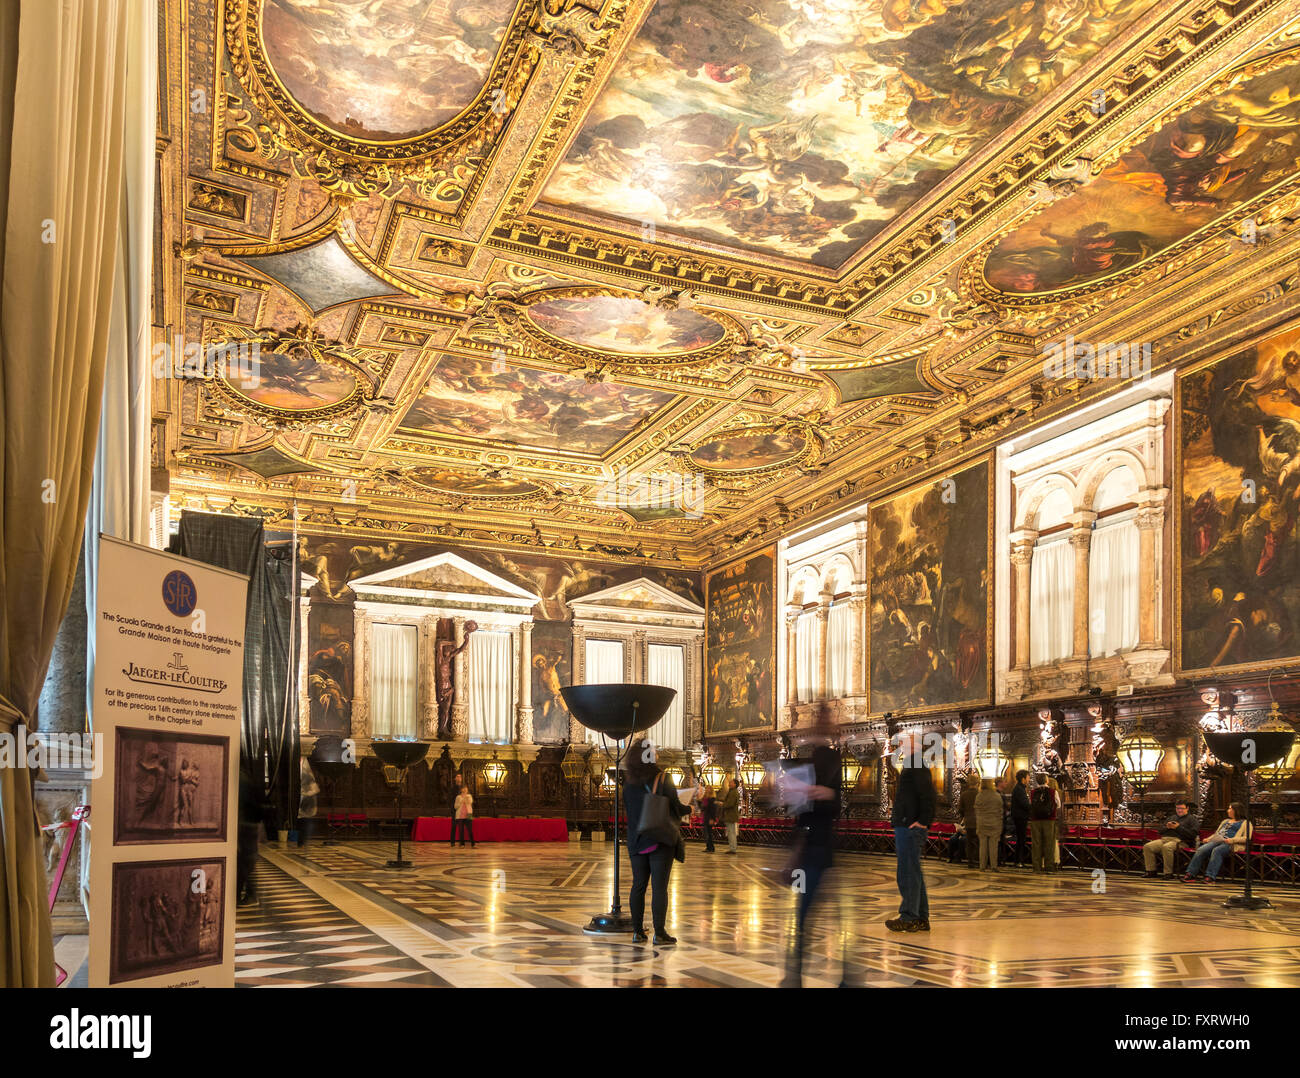 Venice, Scuola Grande di San Rocco, Sala Superiore - Upper Hall interior decorated by Tintoretto. Stock Photo